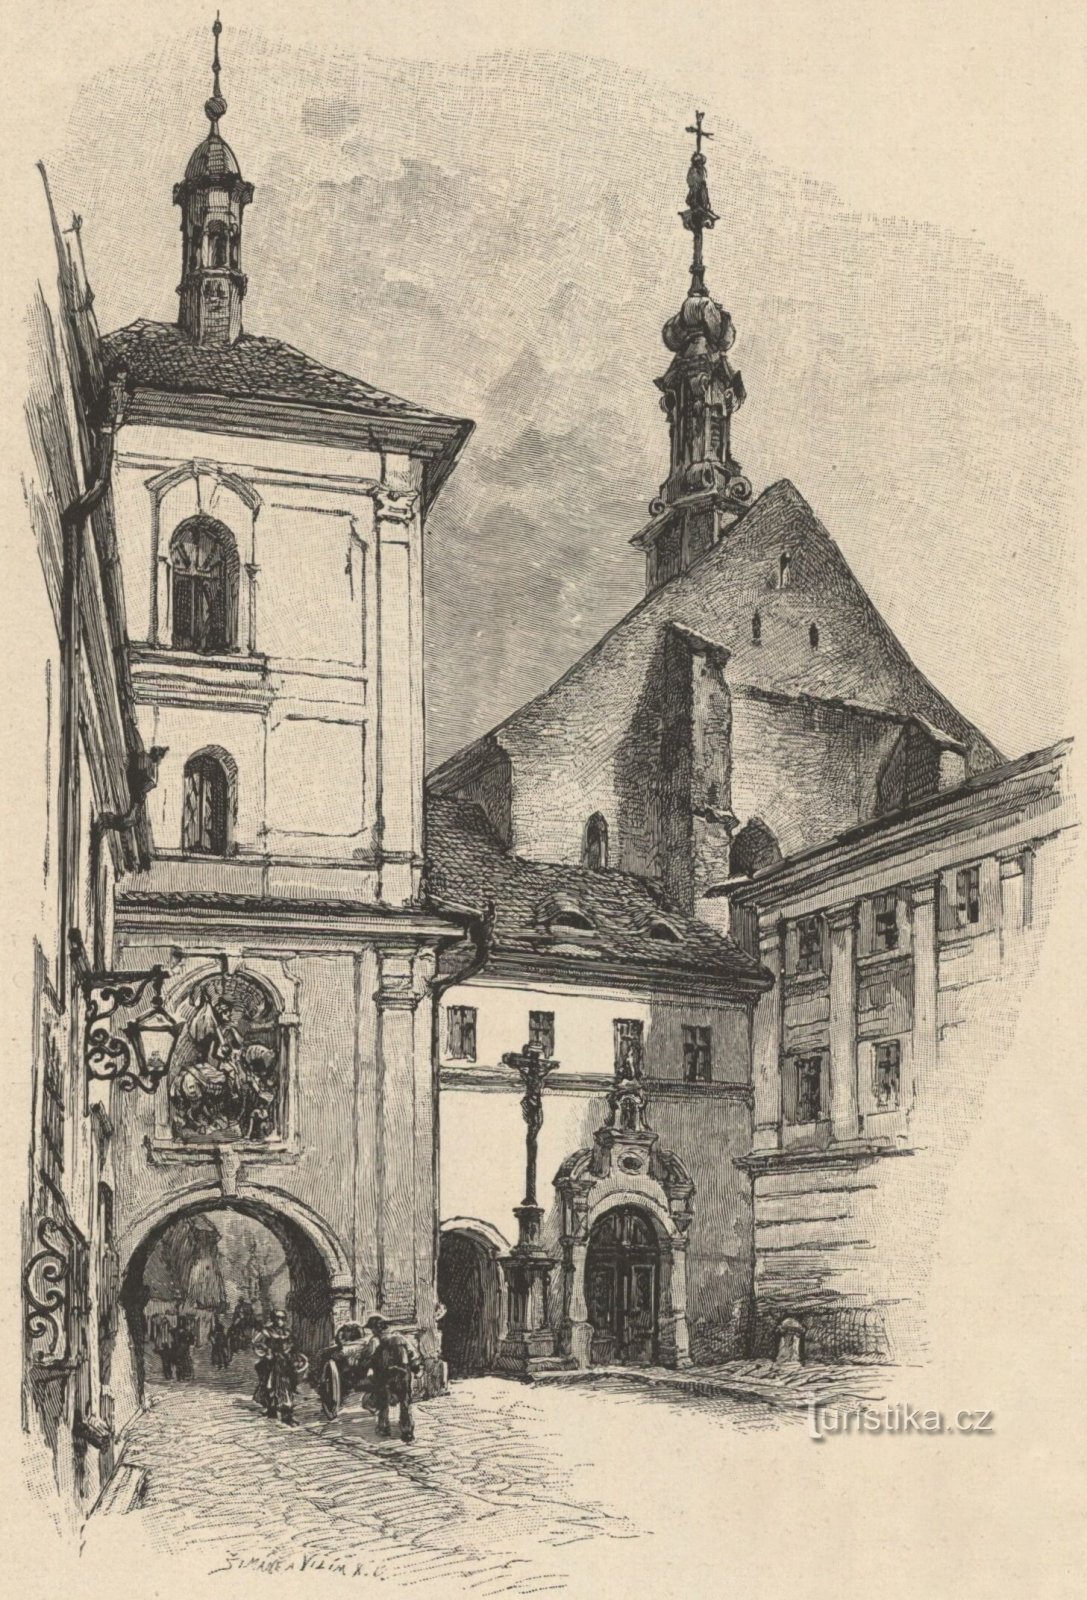 O portão da cidade com a torre do sino e a igreja de St. Nicolau, bispo (Jaroměř, virada dos anos 70